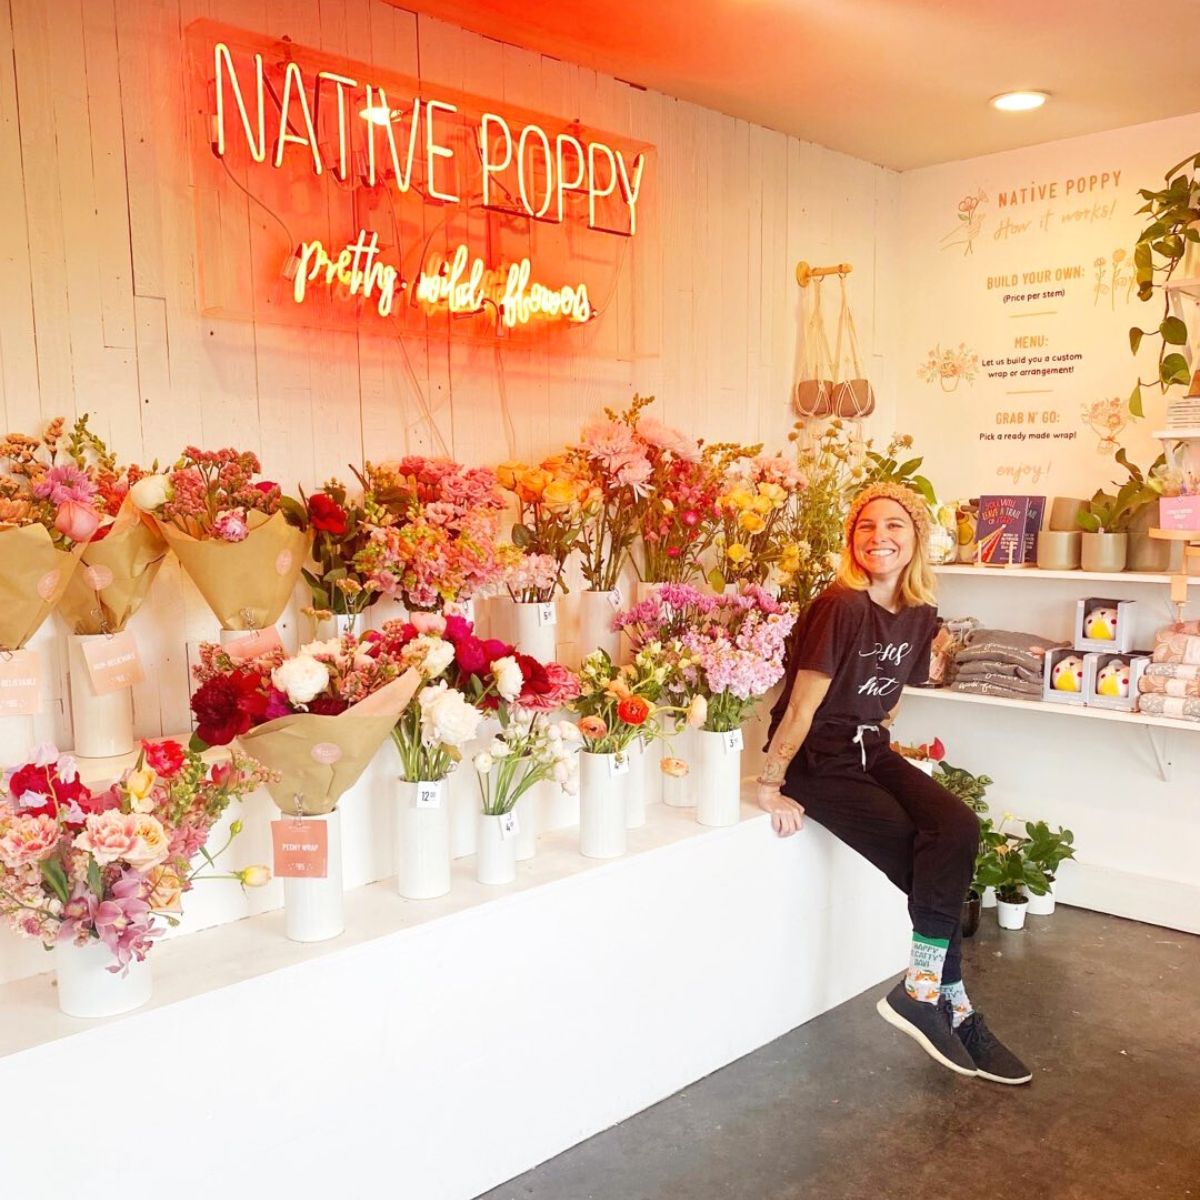 Native Poppy by Natalie Gill